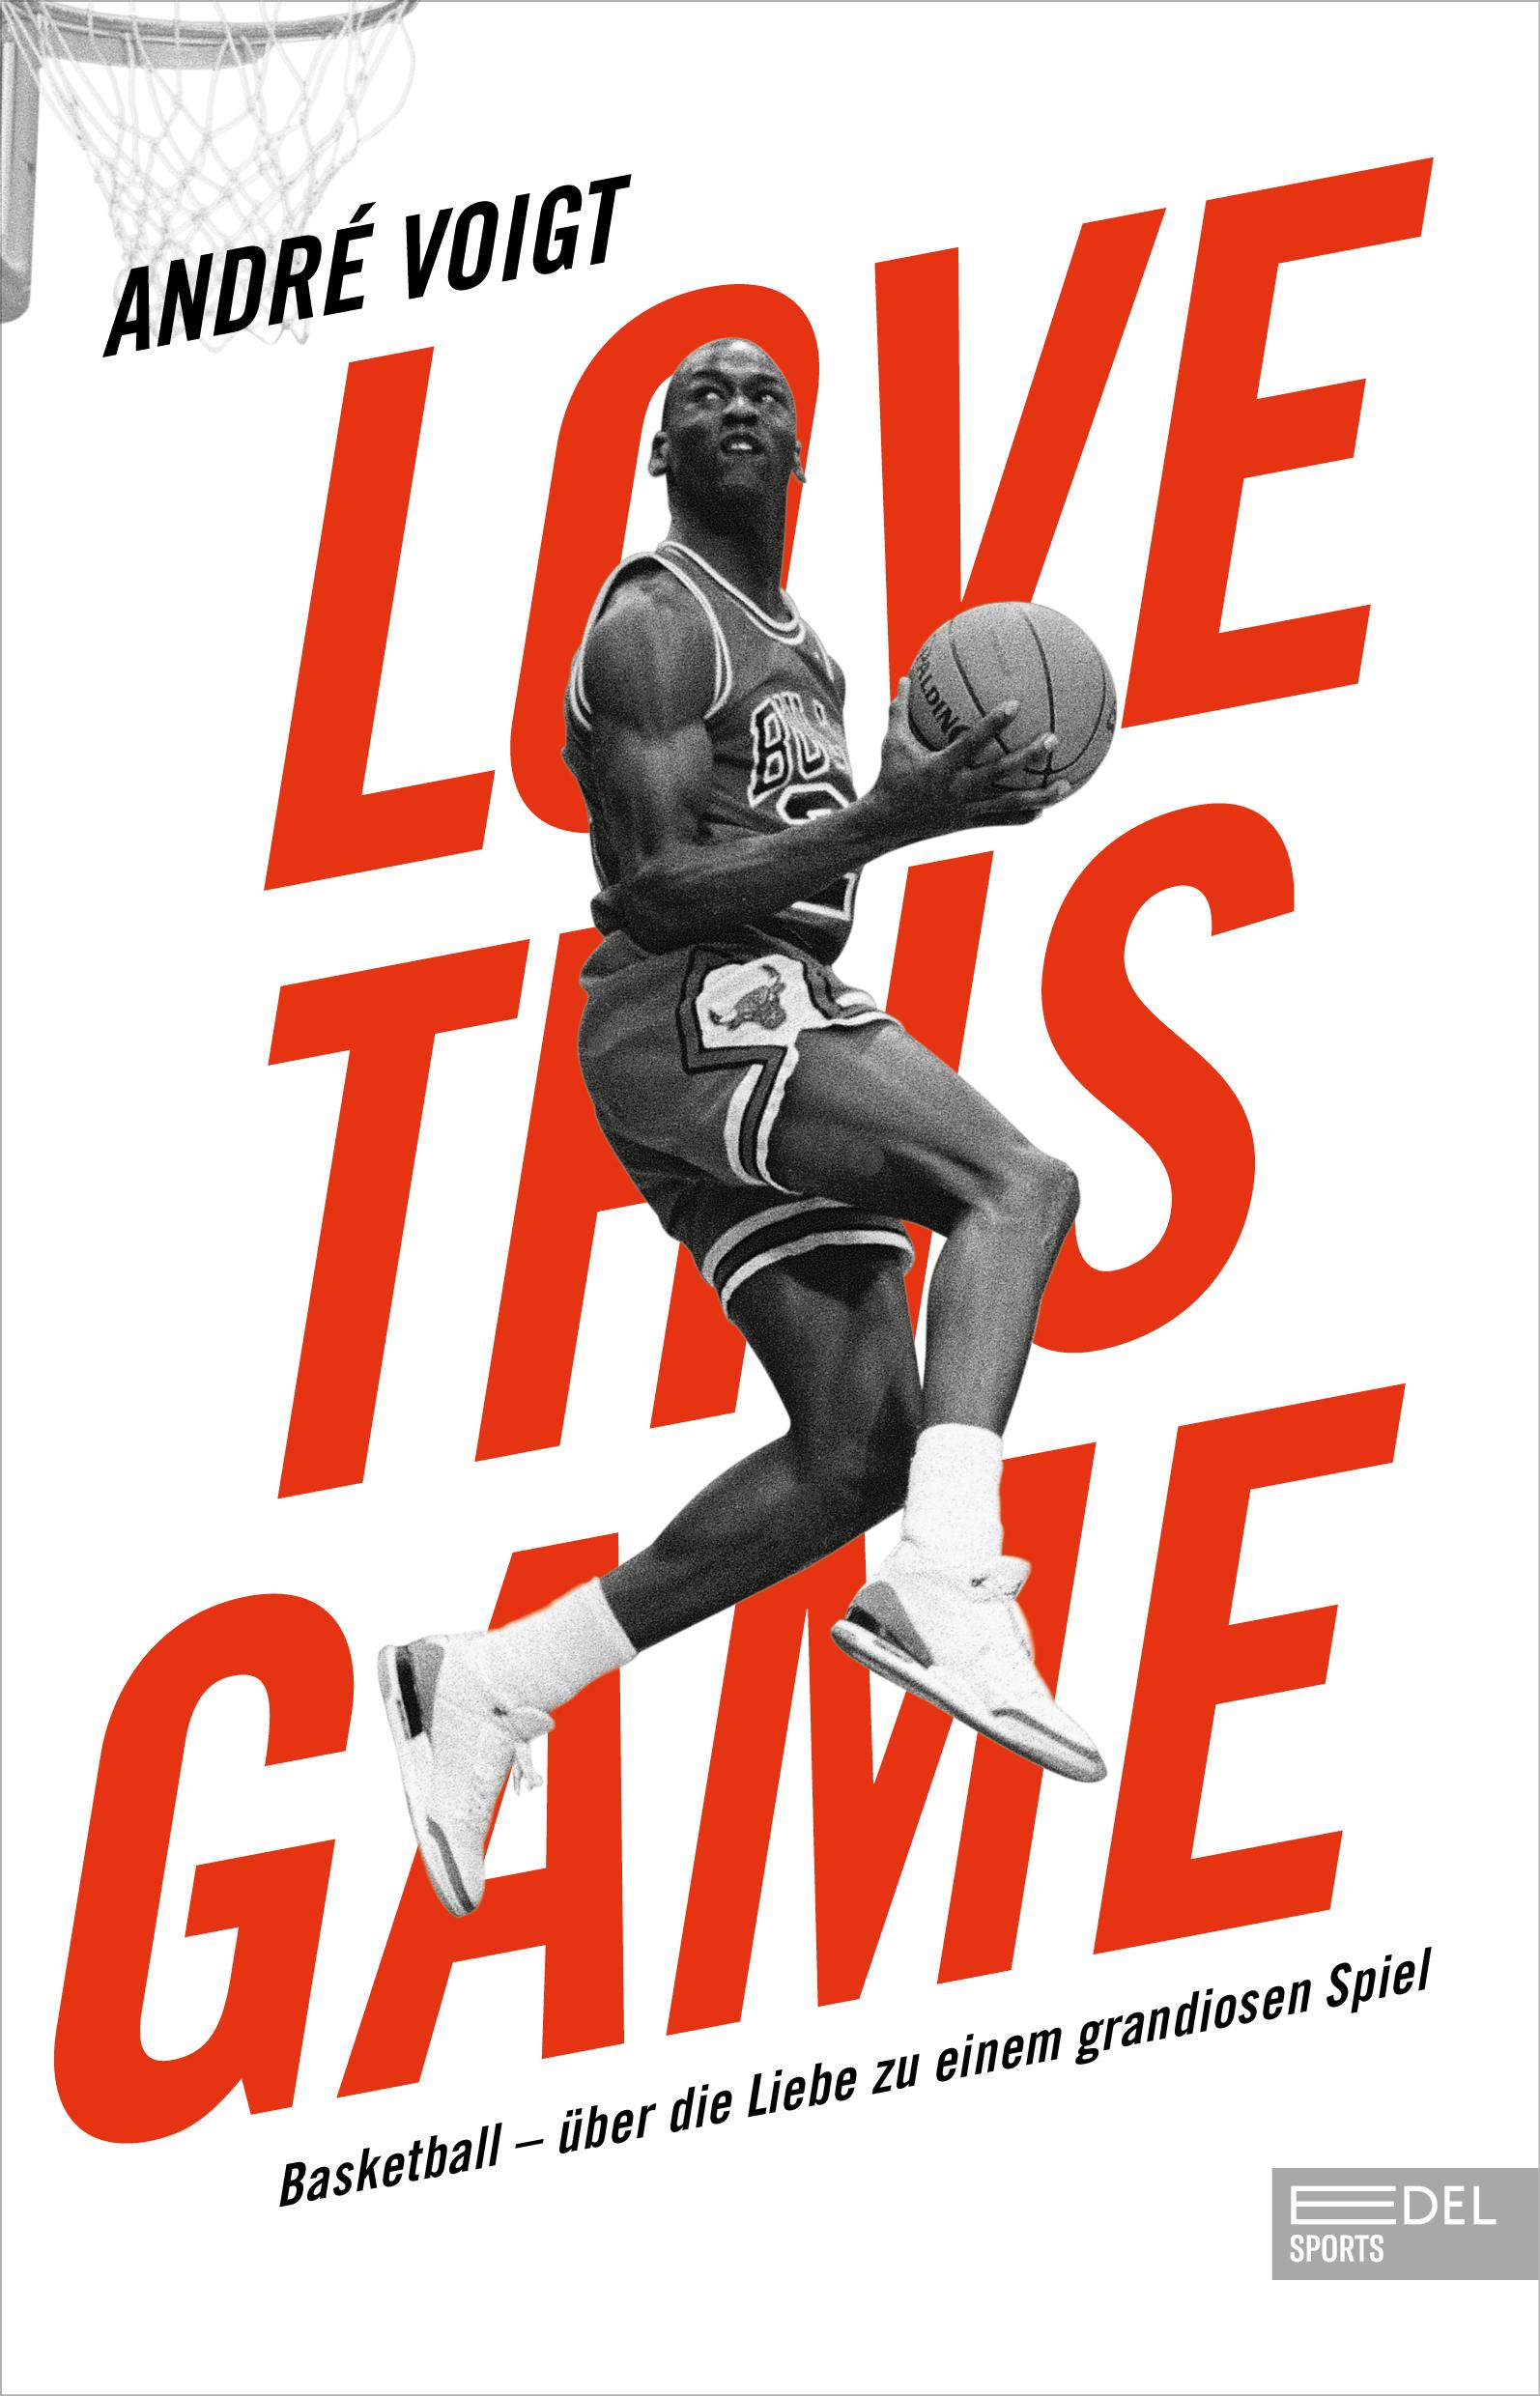 Love this Game Basketball - über die Liebe zu einem grandiosen Spiel